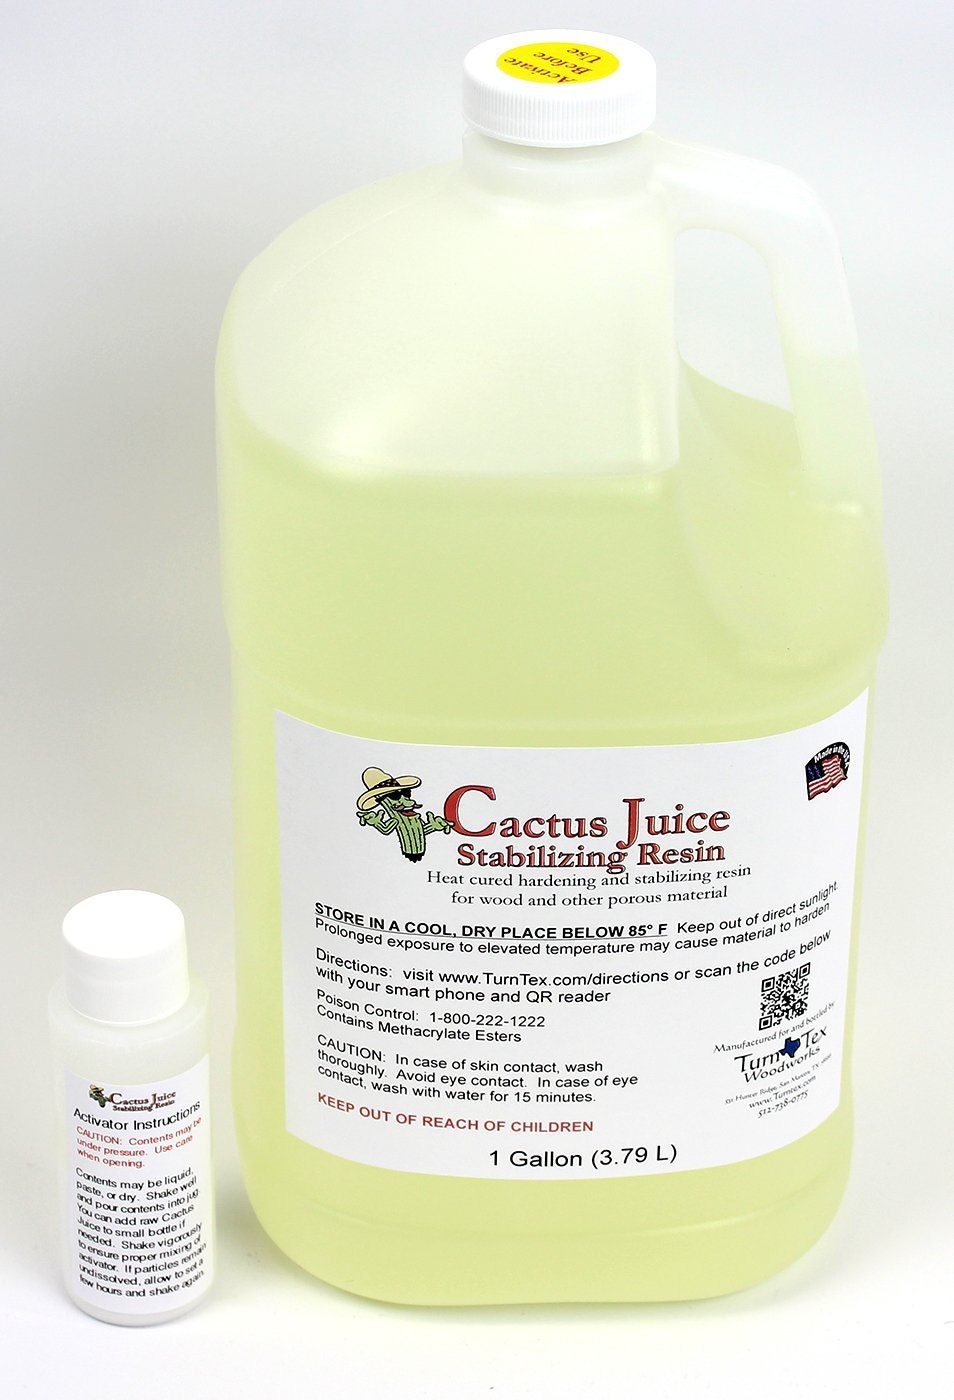 1 Gallon (3.79 L) Cactus Juice